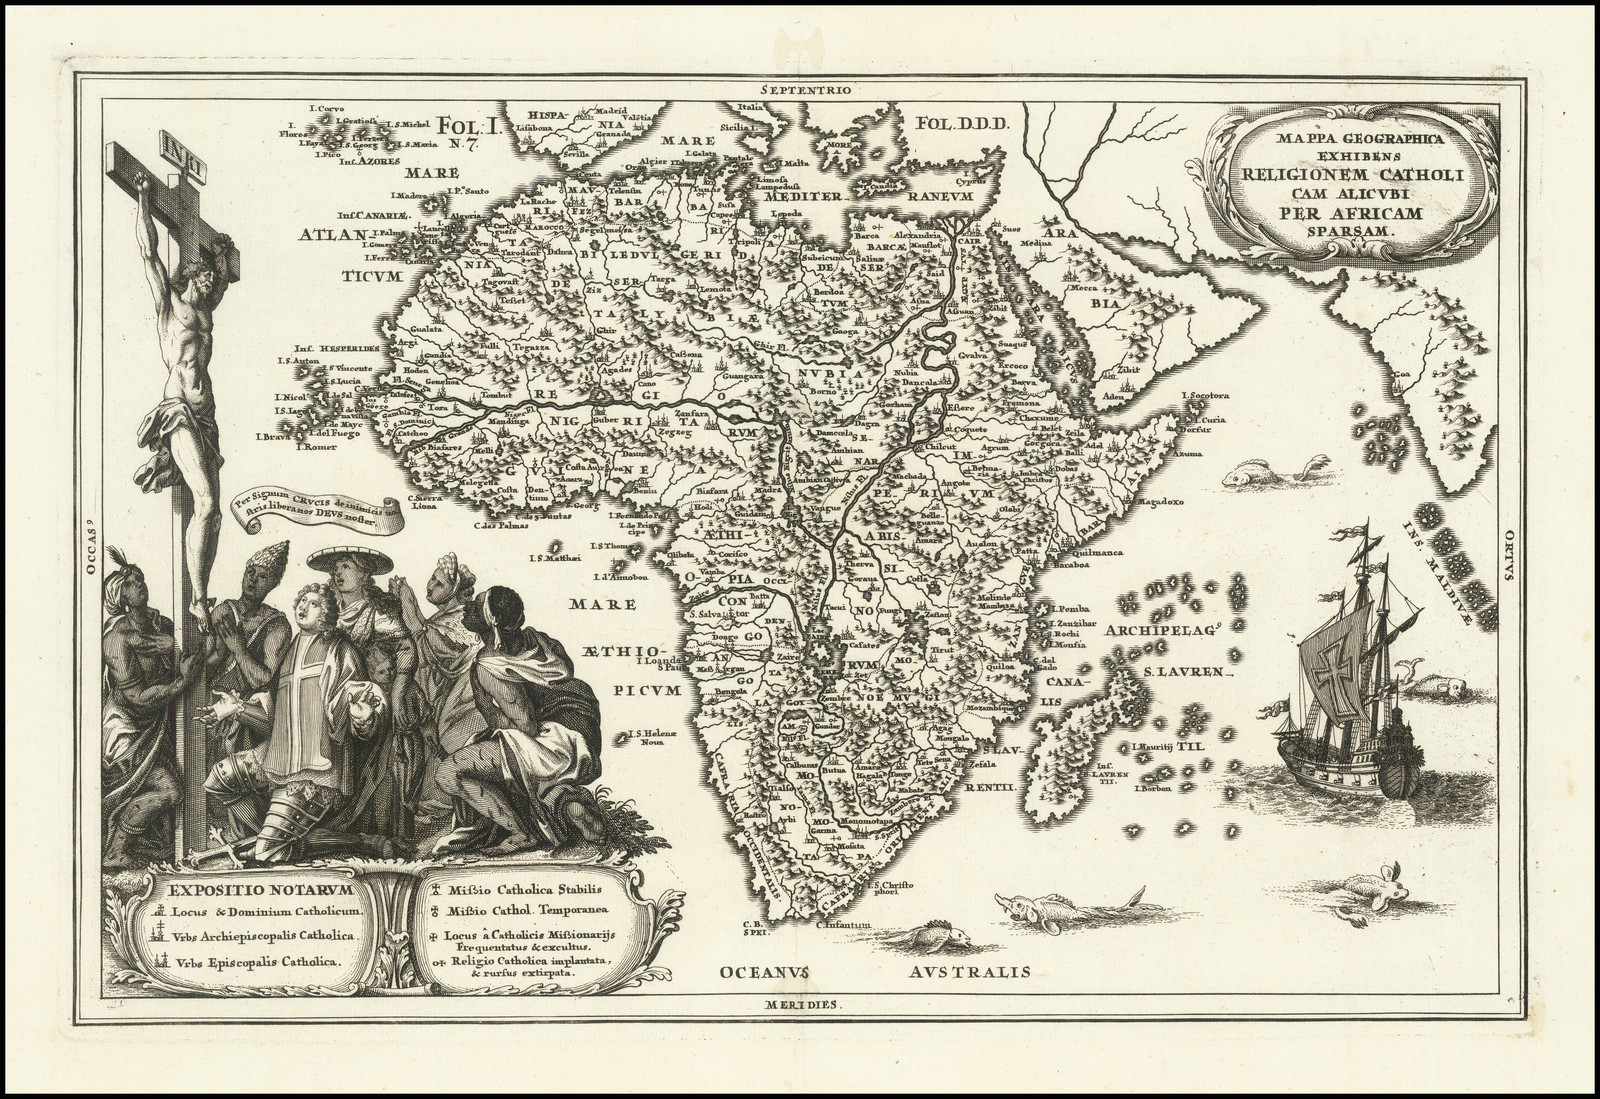 Mappa Geographica Exhibens Religionem Catholicam Alicubi Per Africam Sparsam